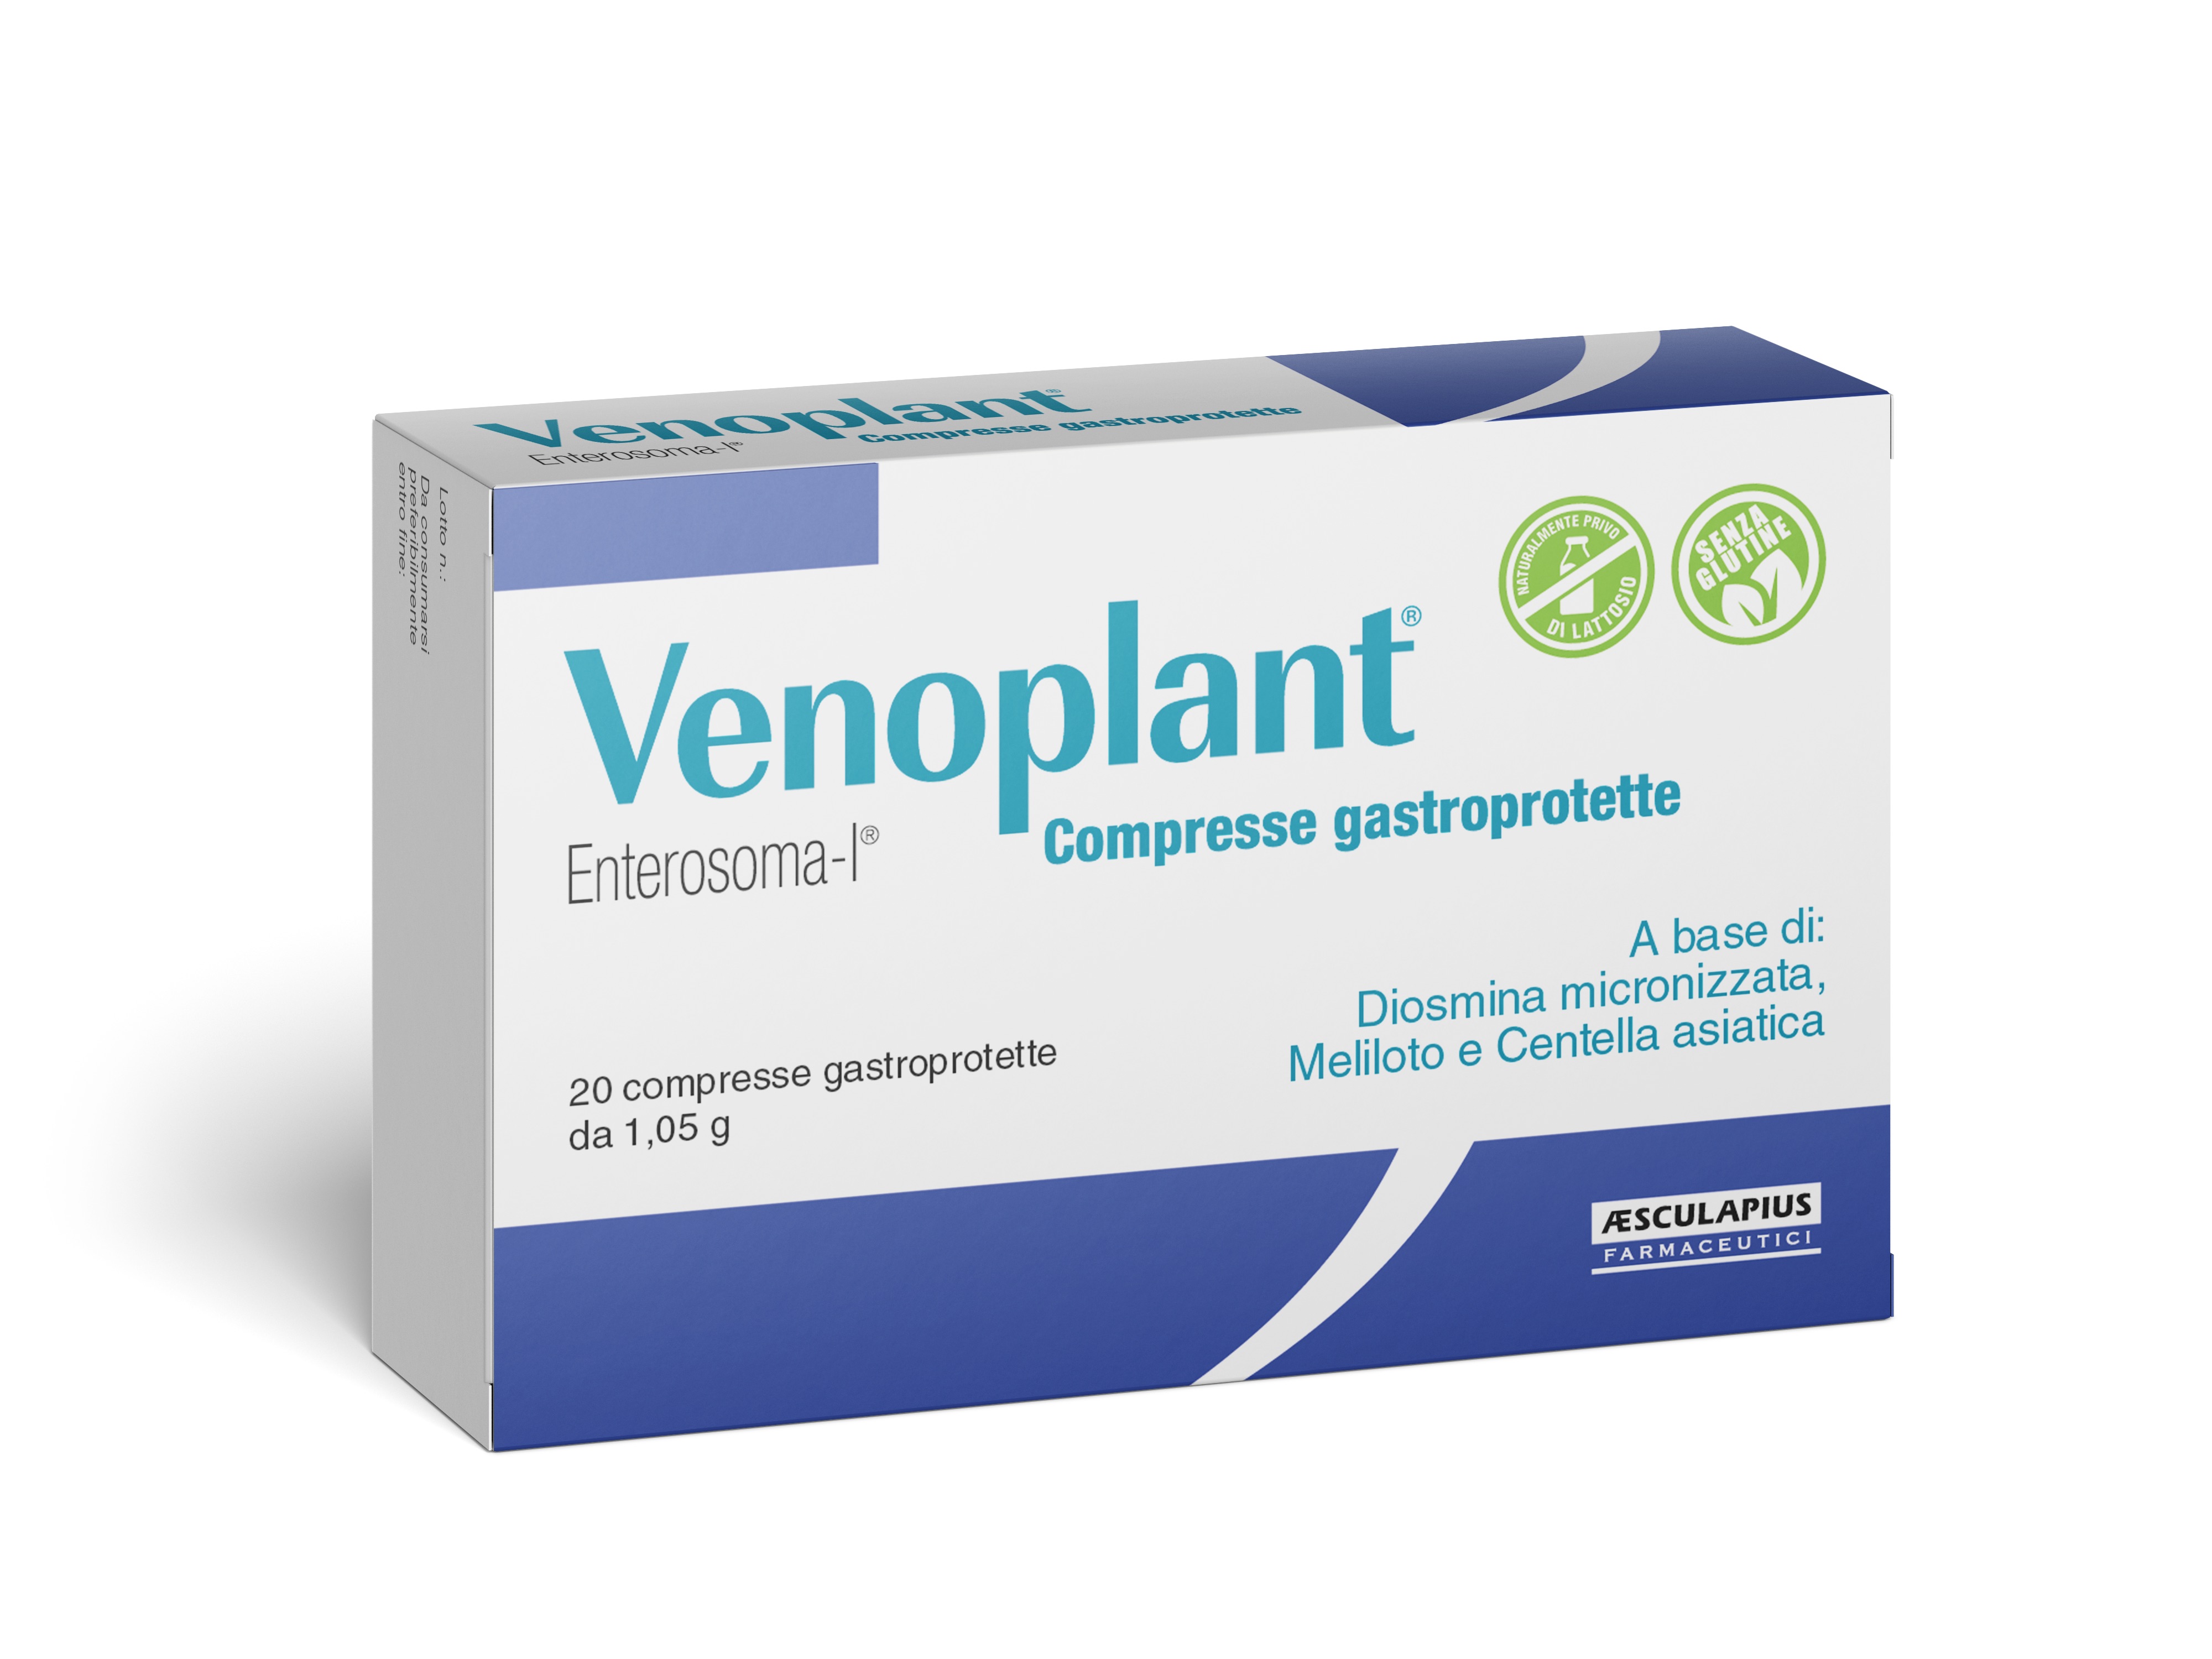 Venoplant compresse gastroprotette